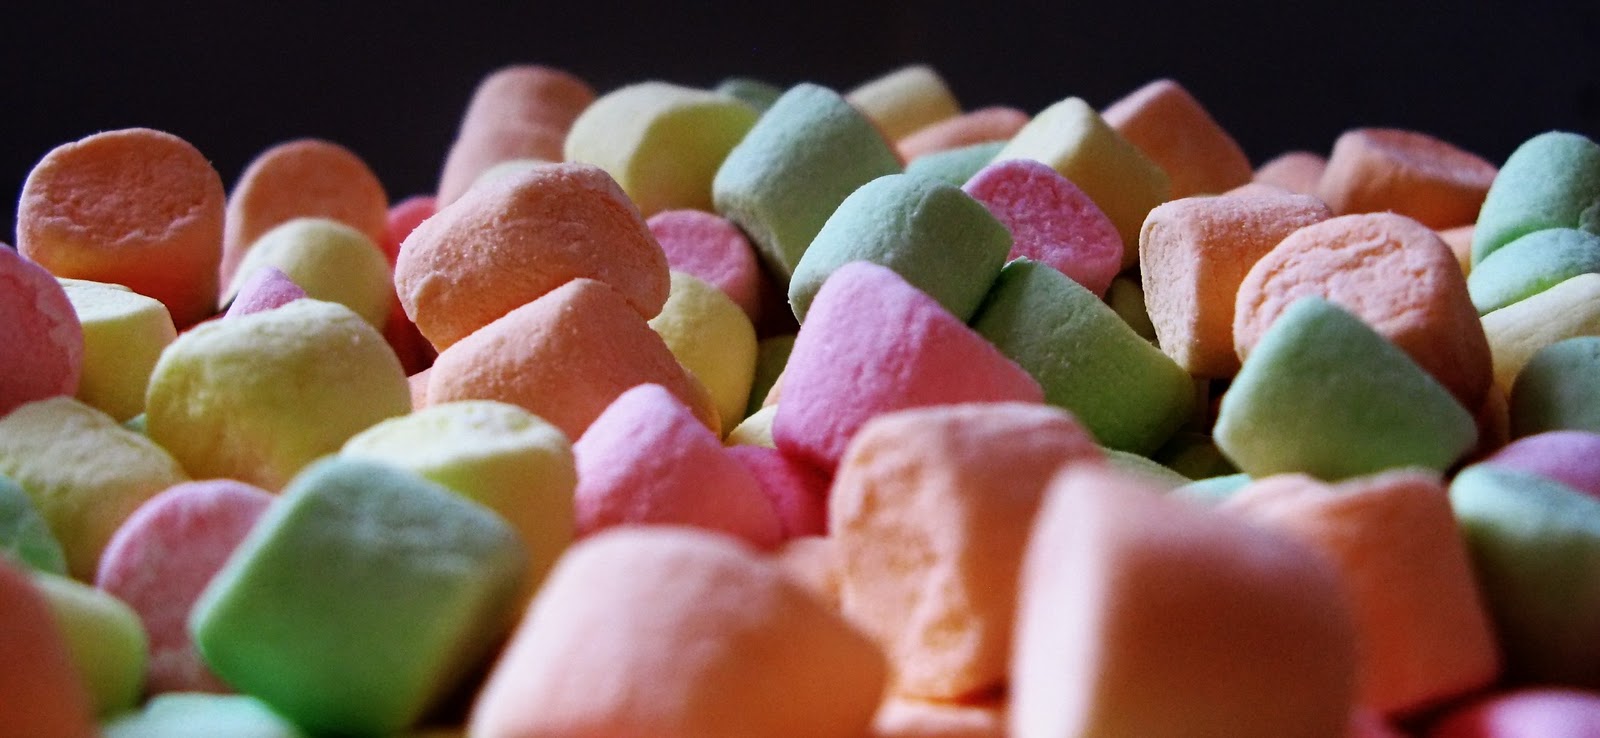 FairyLand: Mmmm….marshmallows…